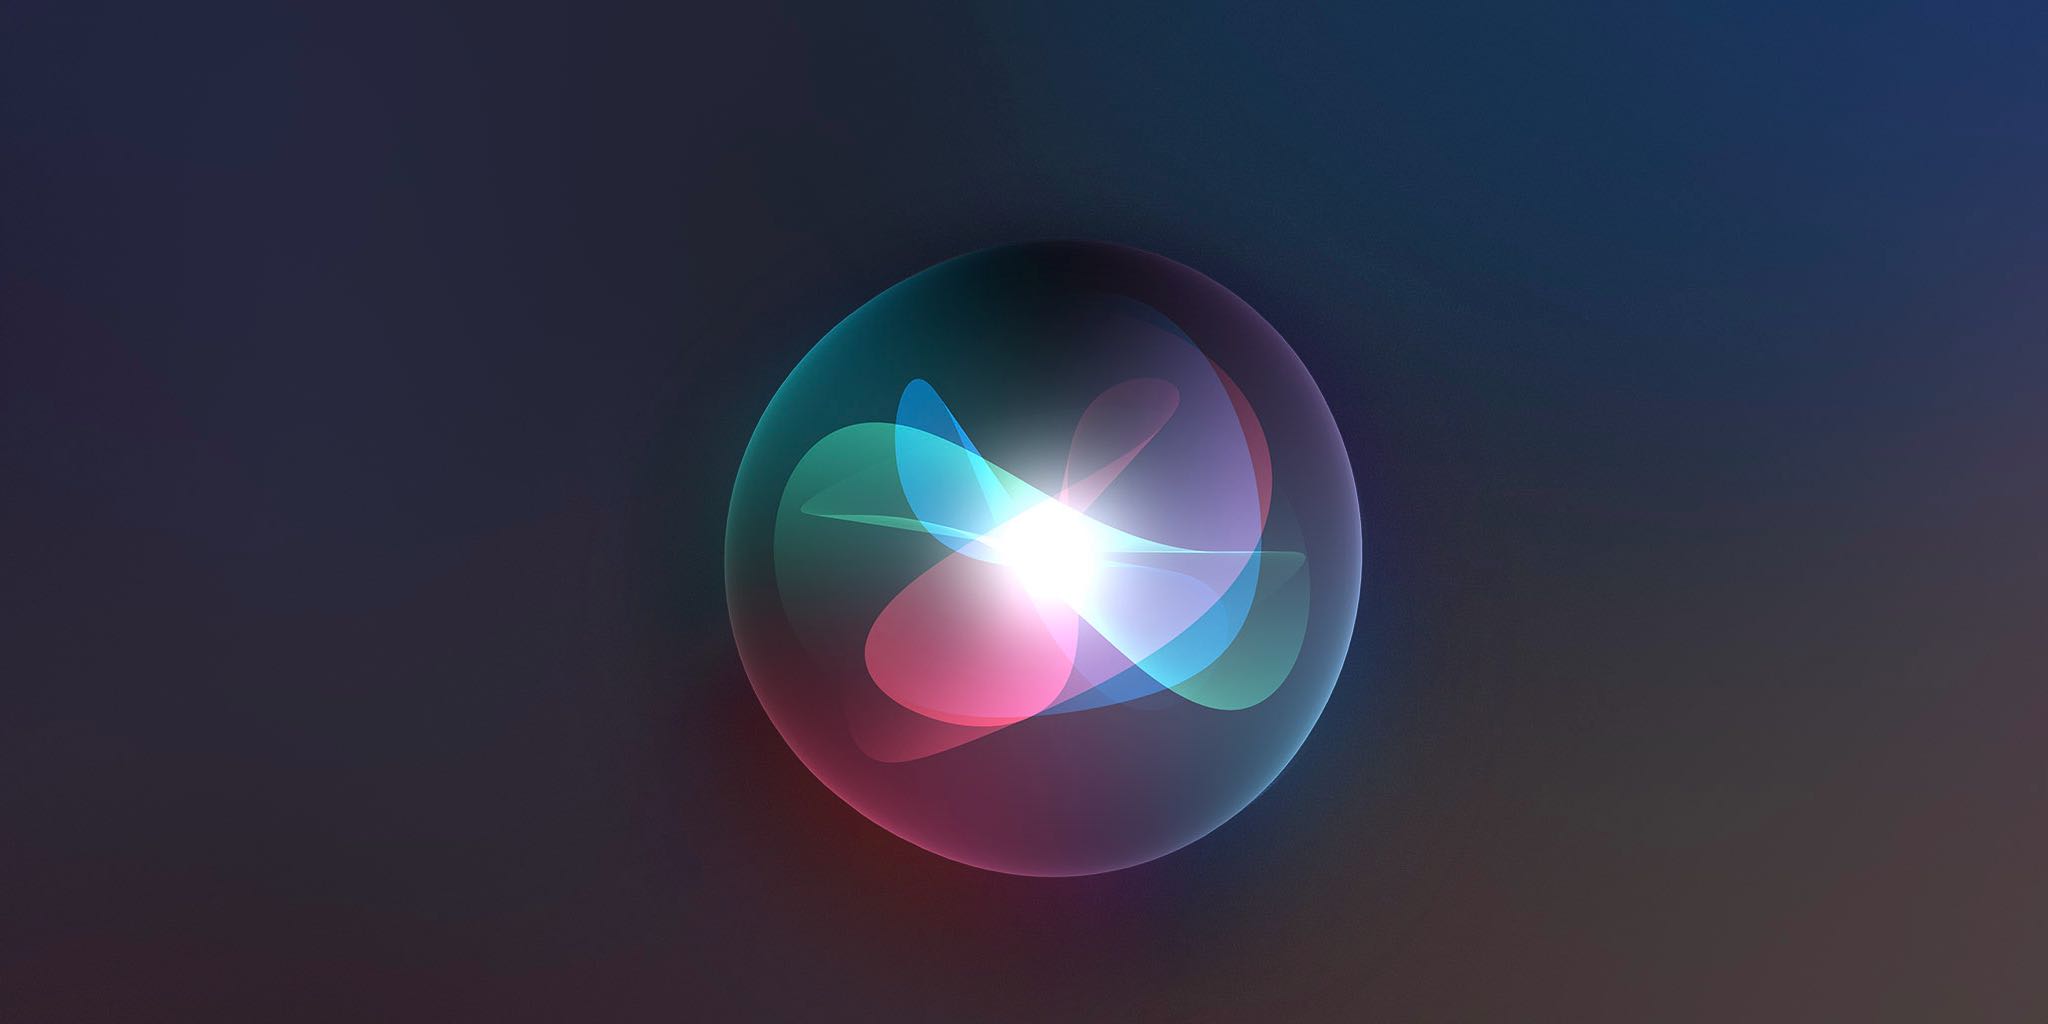 Uma imagem em destaque que mostra um orbe Siri contra um b escuro ackground